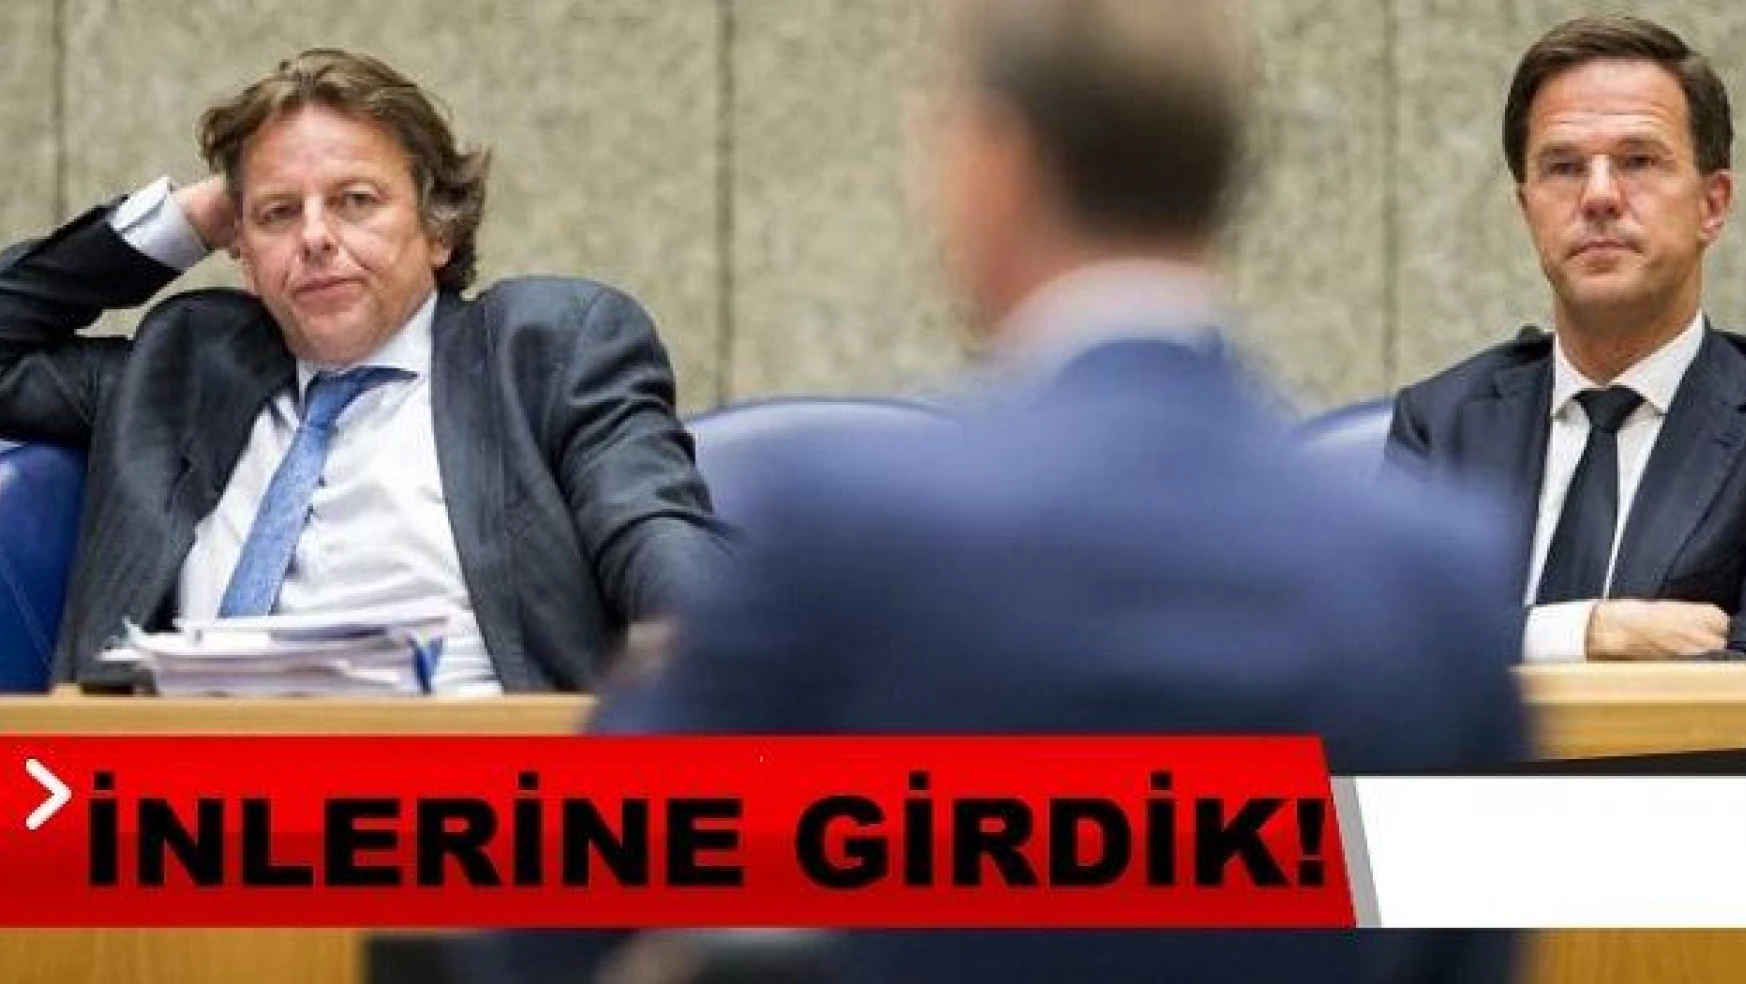 Türklerden Hollanda'ya kapak! Hollanda Meclisine 3 Türk Milletvekili